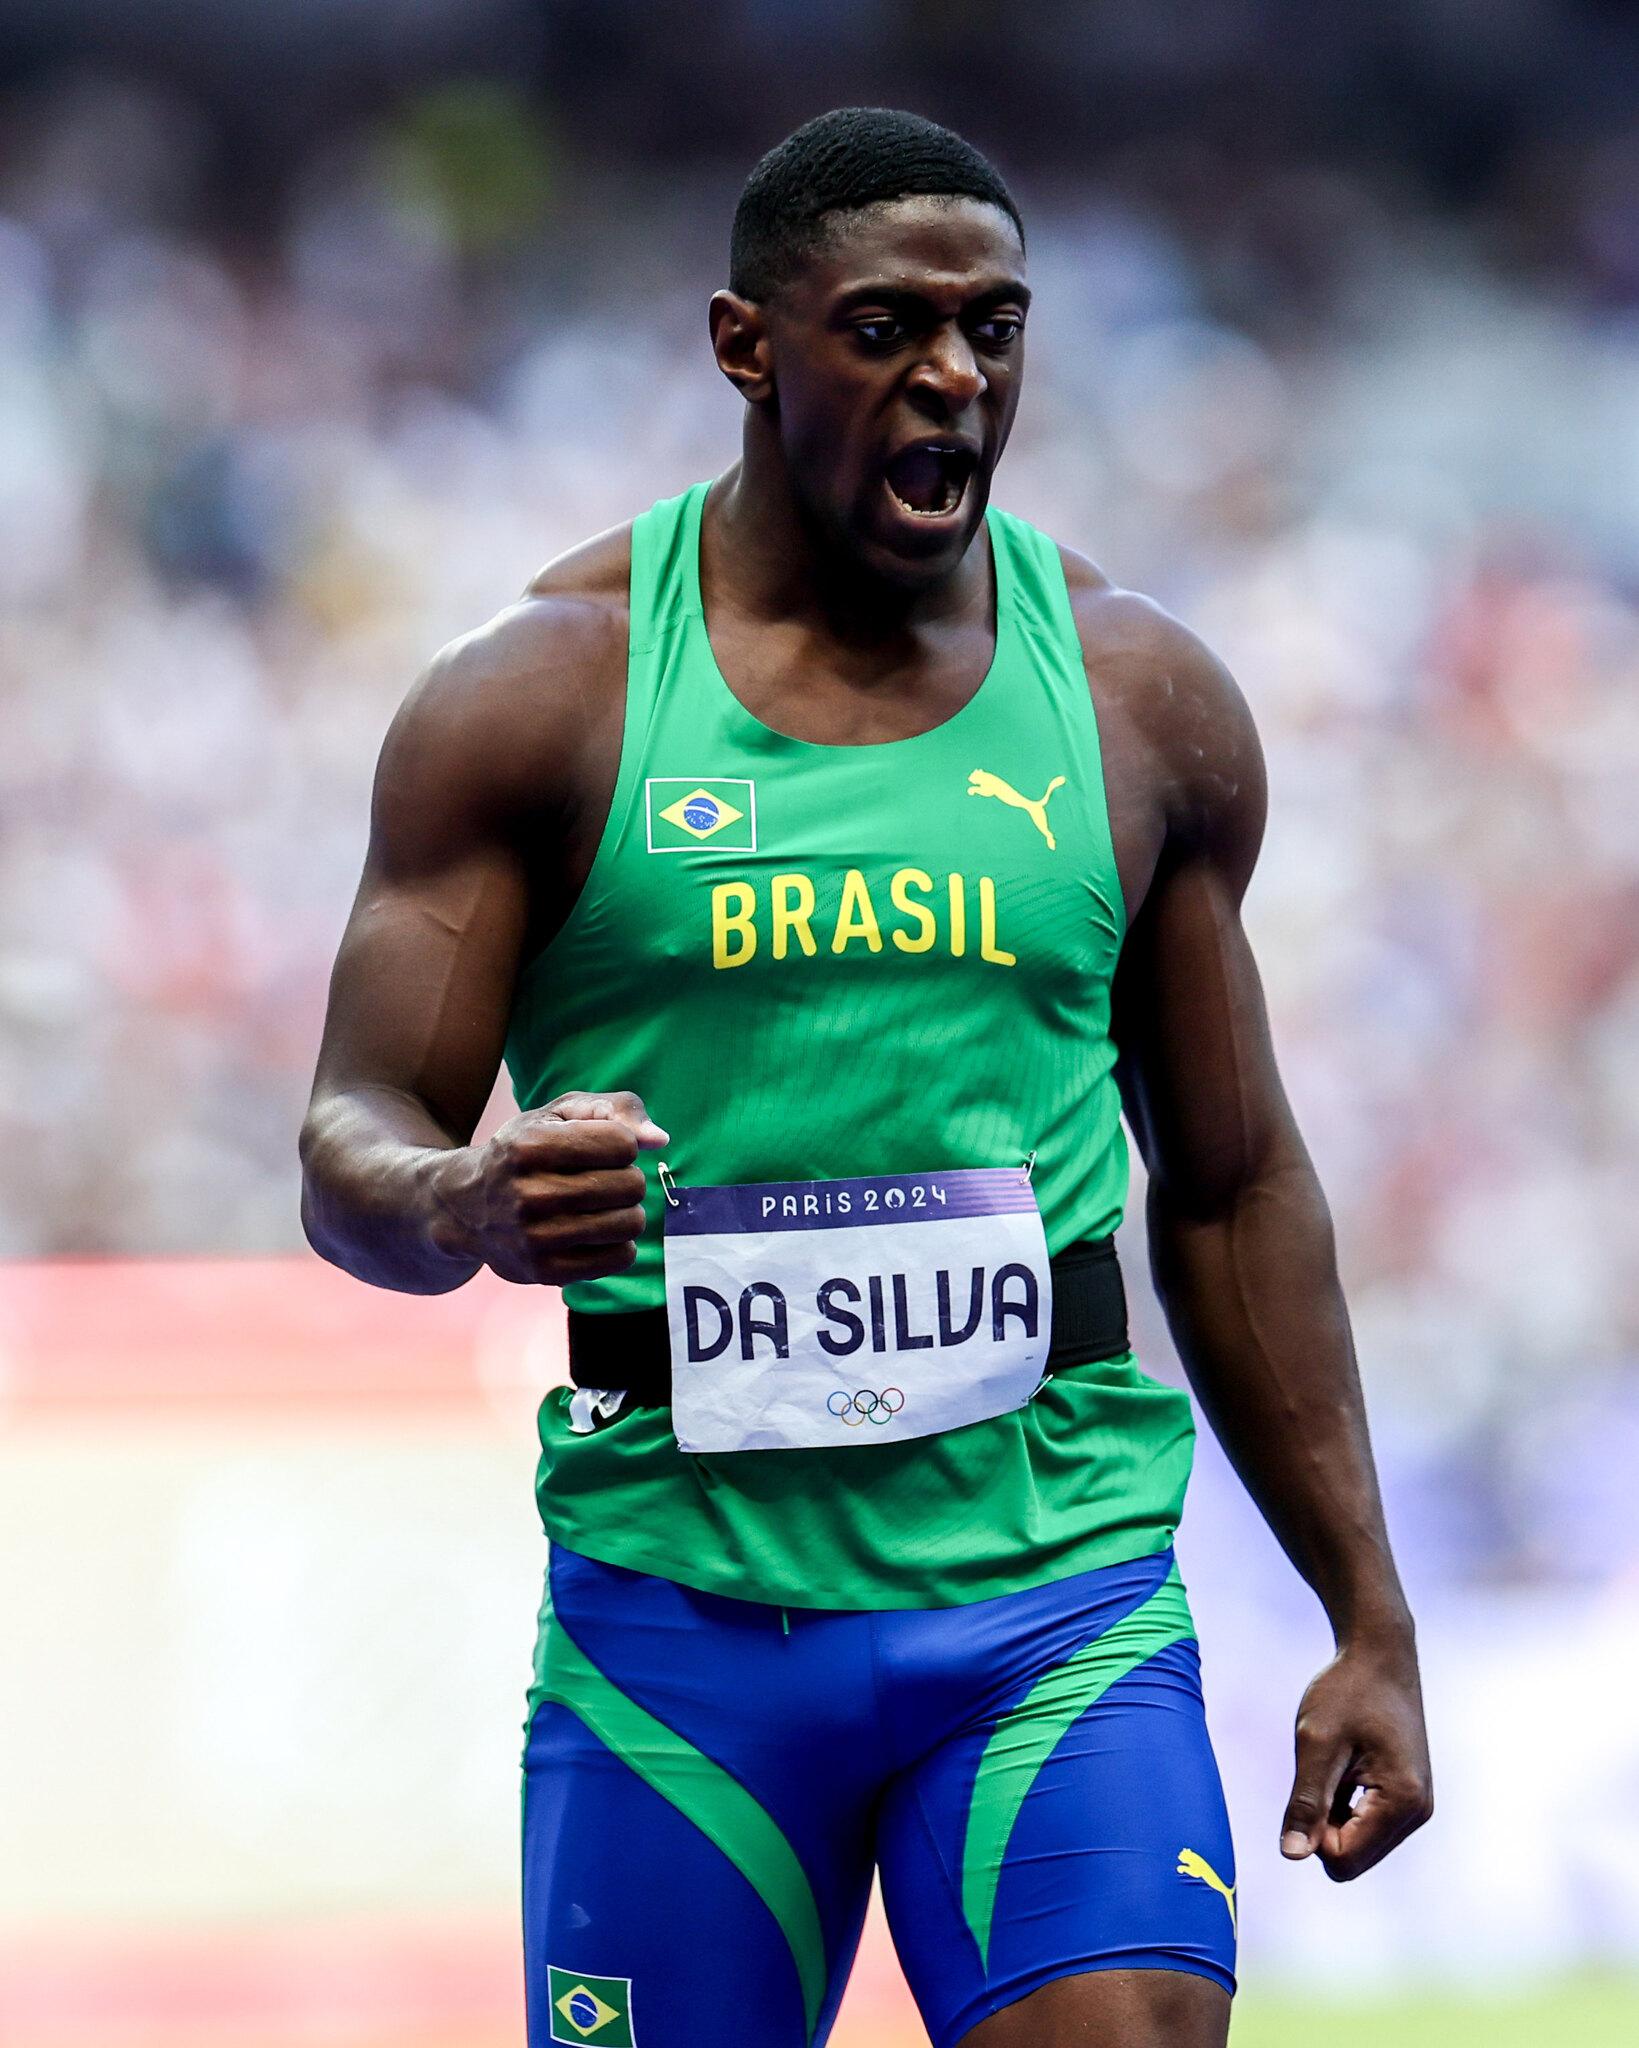 Foto de Luiz Maurício da Silva, atleta brasileiro